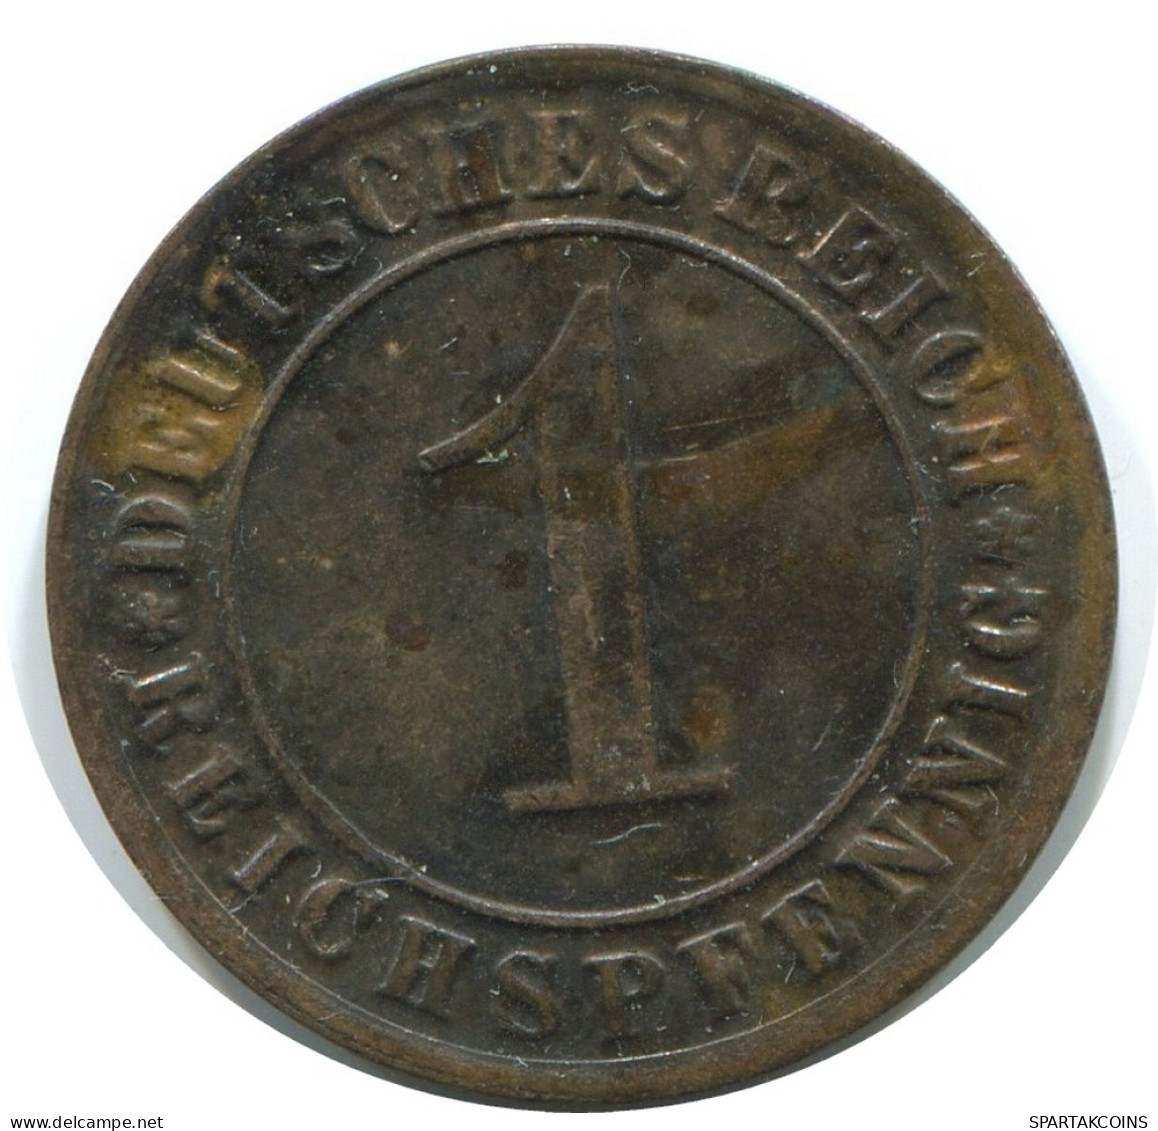 1 REICHSPFENNIG 1931 G ALEMANIA Moneda GERMANY #AE221.E - 1 Rentenpfennig & 1 Reichspfennig